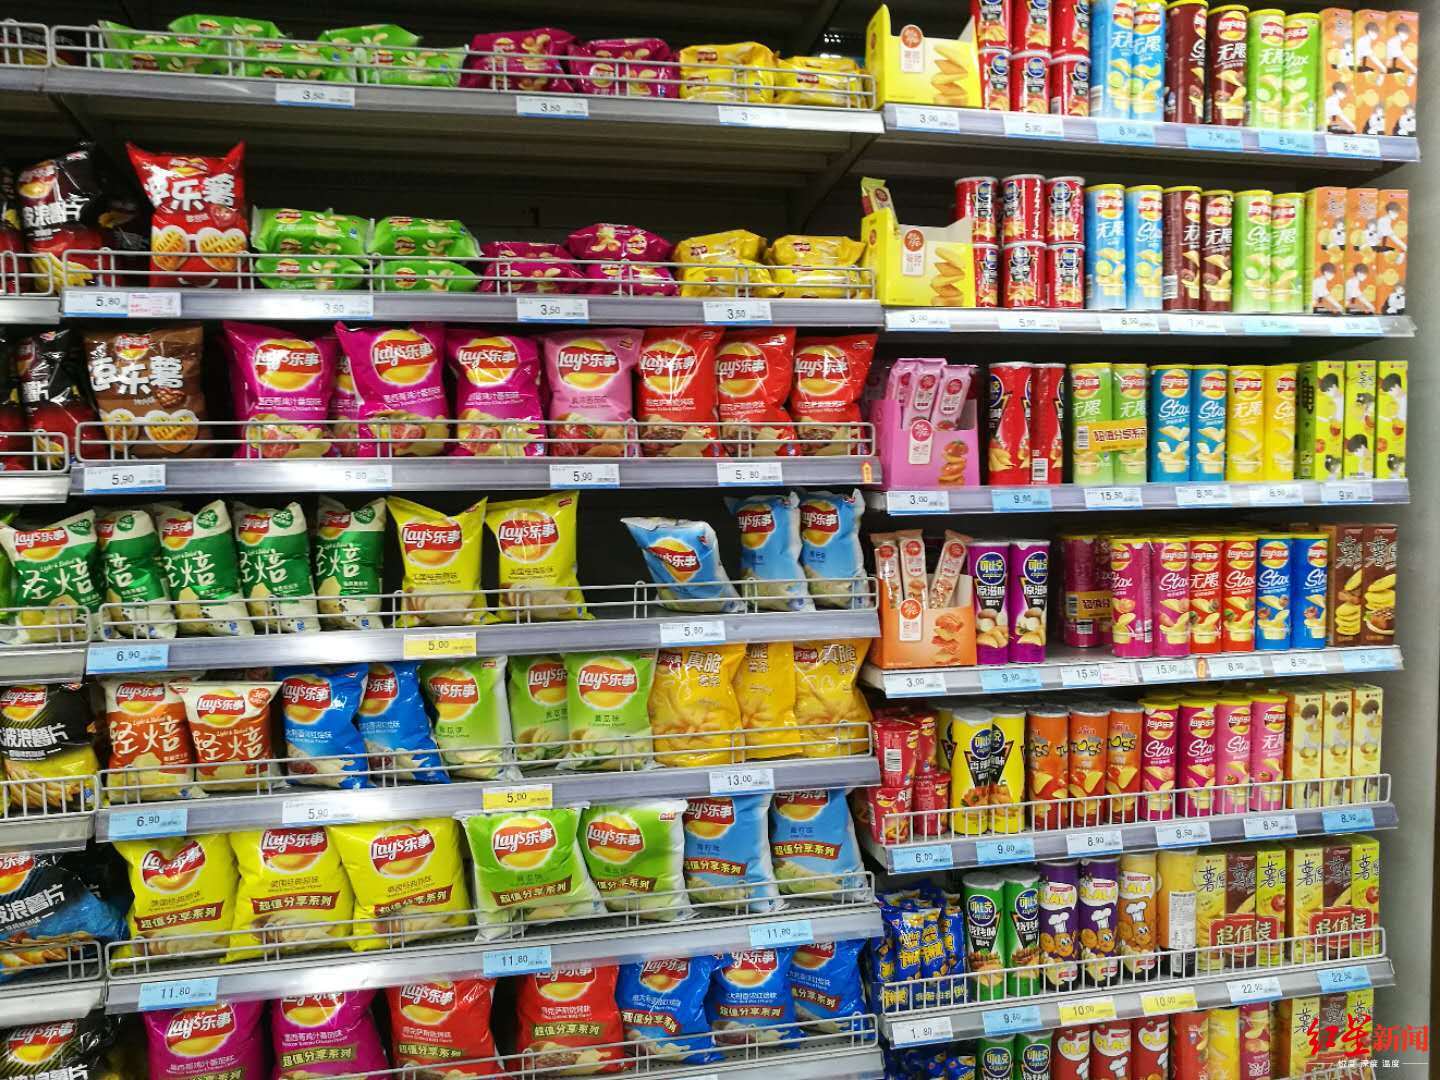 了位于成都的多家商场超市发现,尽管5月1日已过,乐事系列薯片仍未涨价